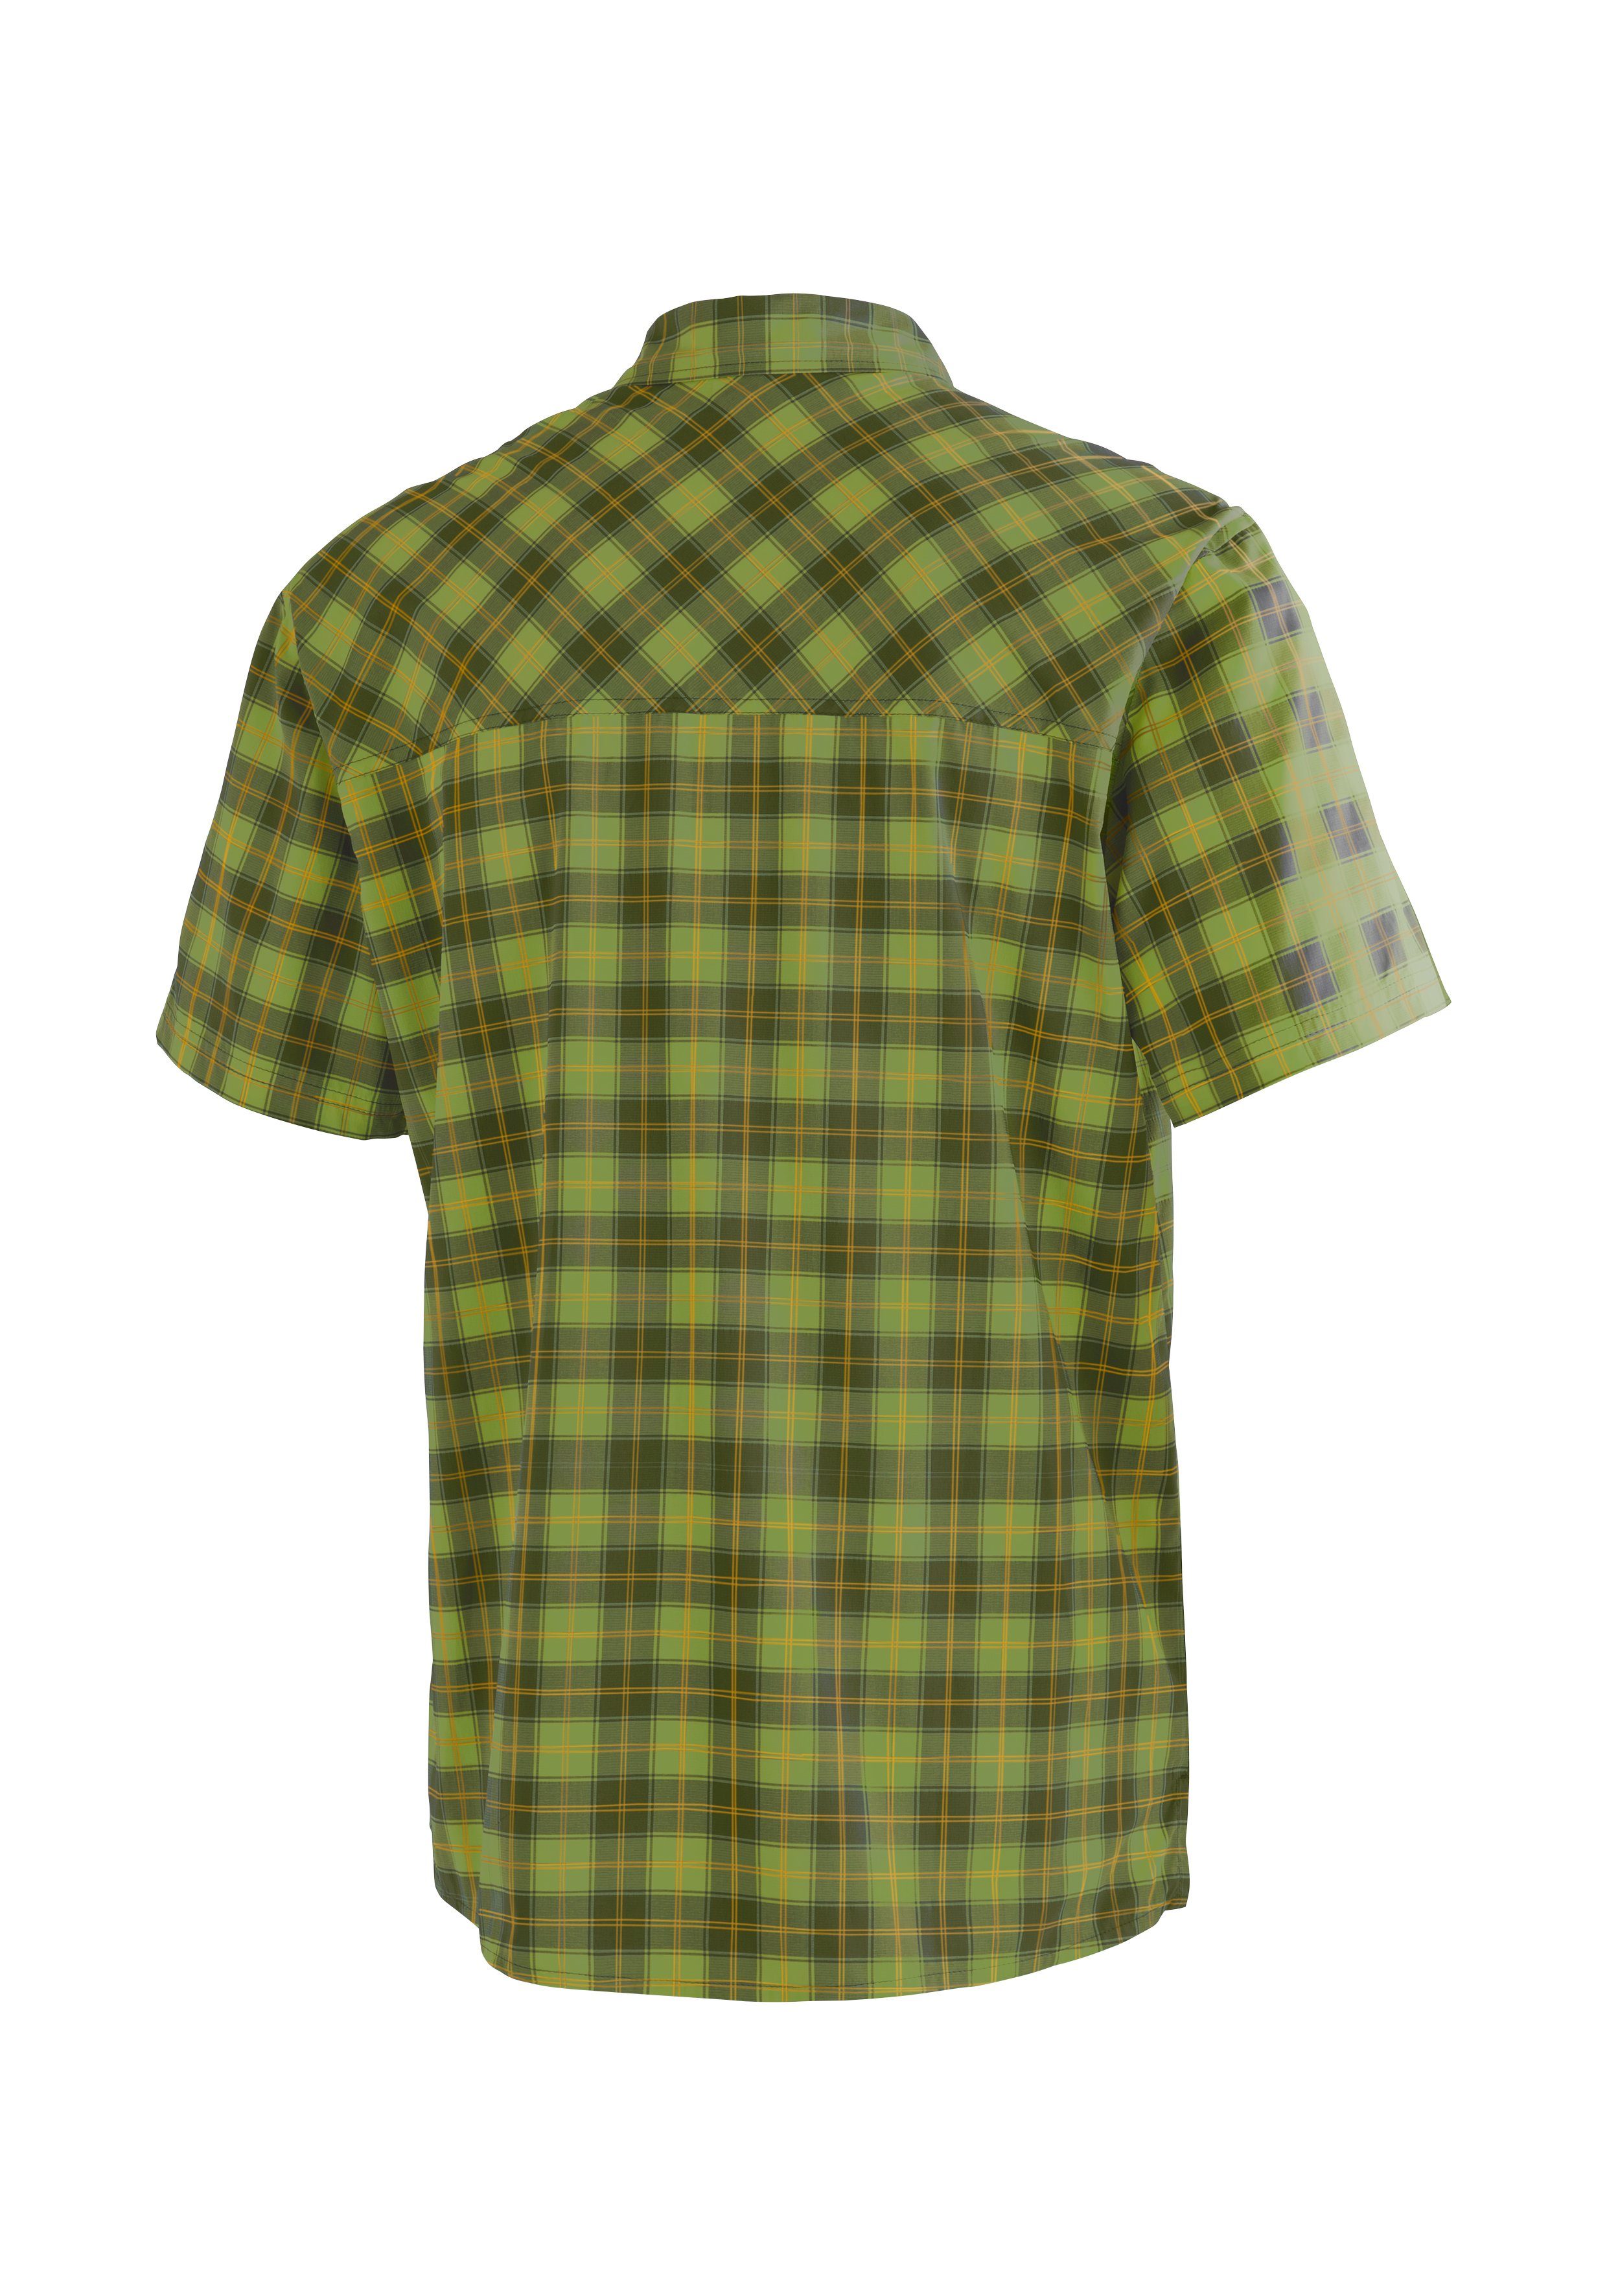 Maier Sports Outdoorhemd Kasen S/S M kurzarm Herrenhemd, atmungsaktives  Wanderhemd, Karohemd, dryprotec Technologie hält auch bei Hitze angenehm  trocken